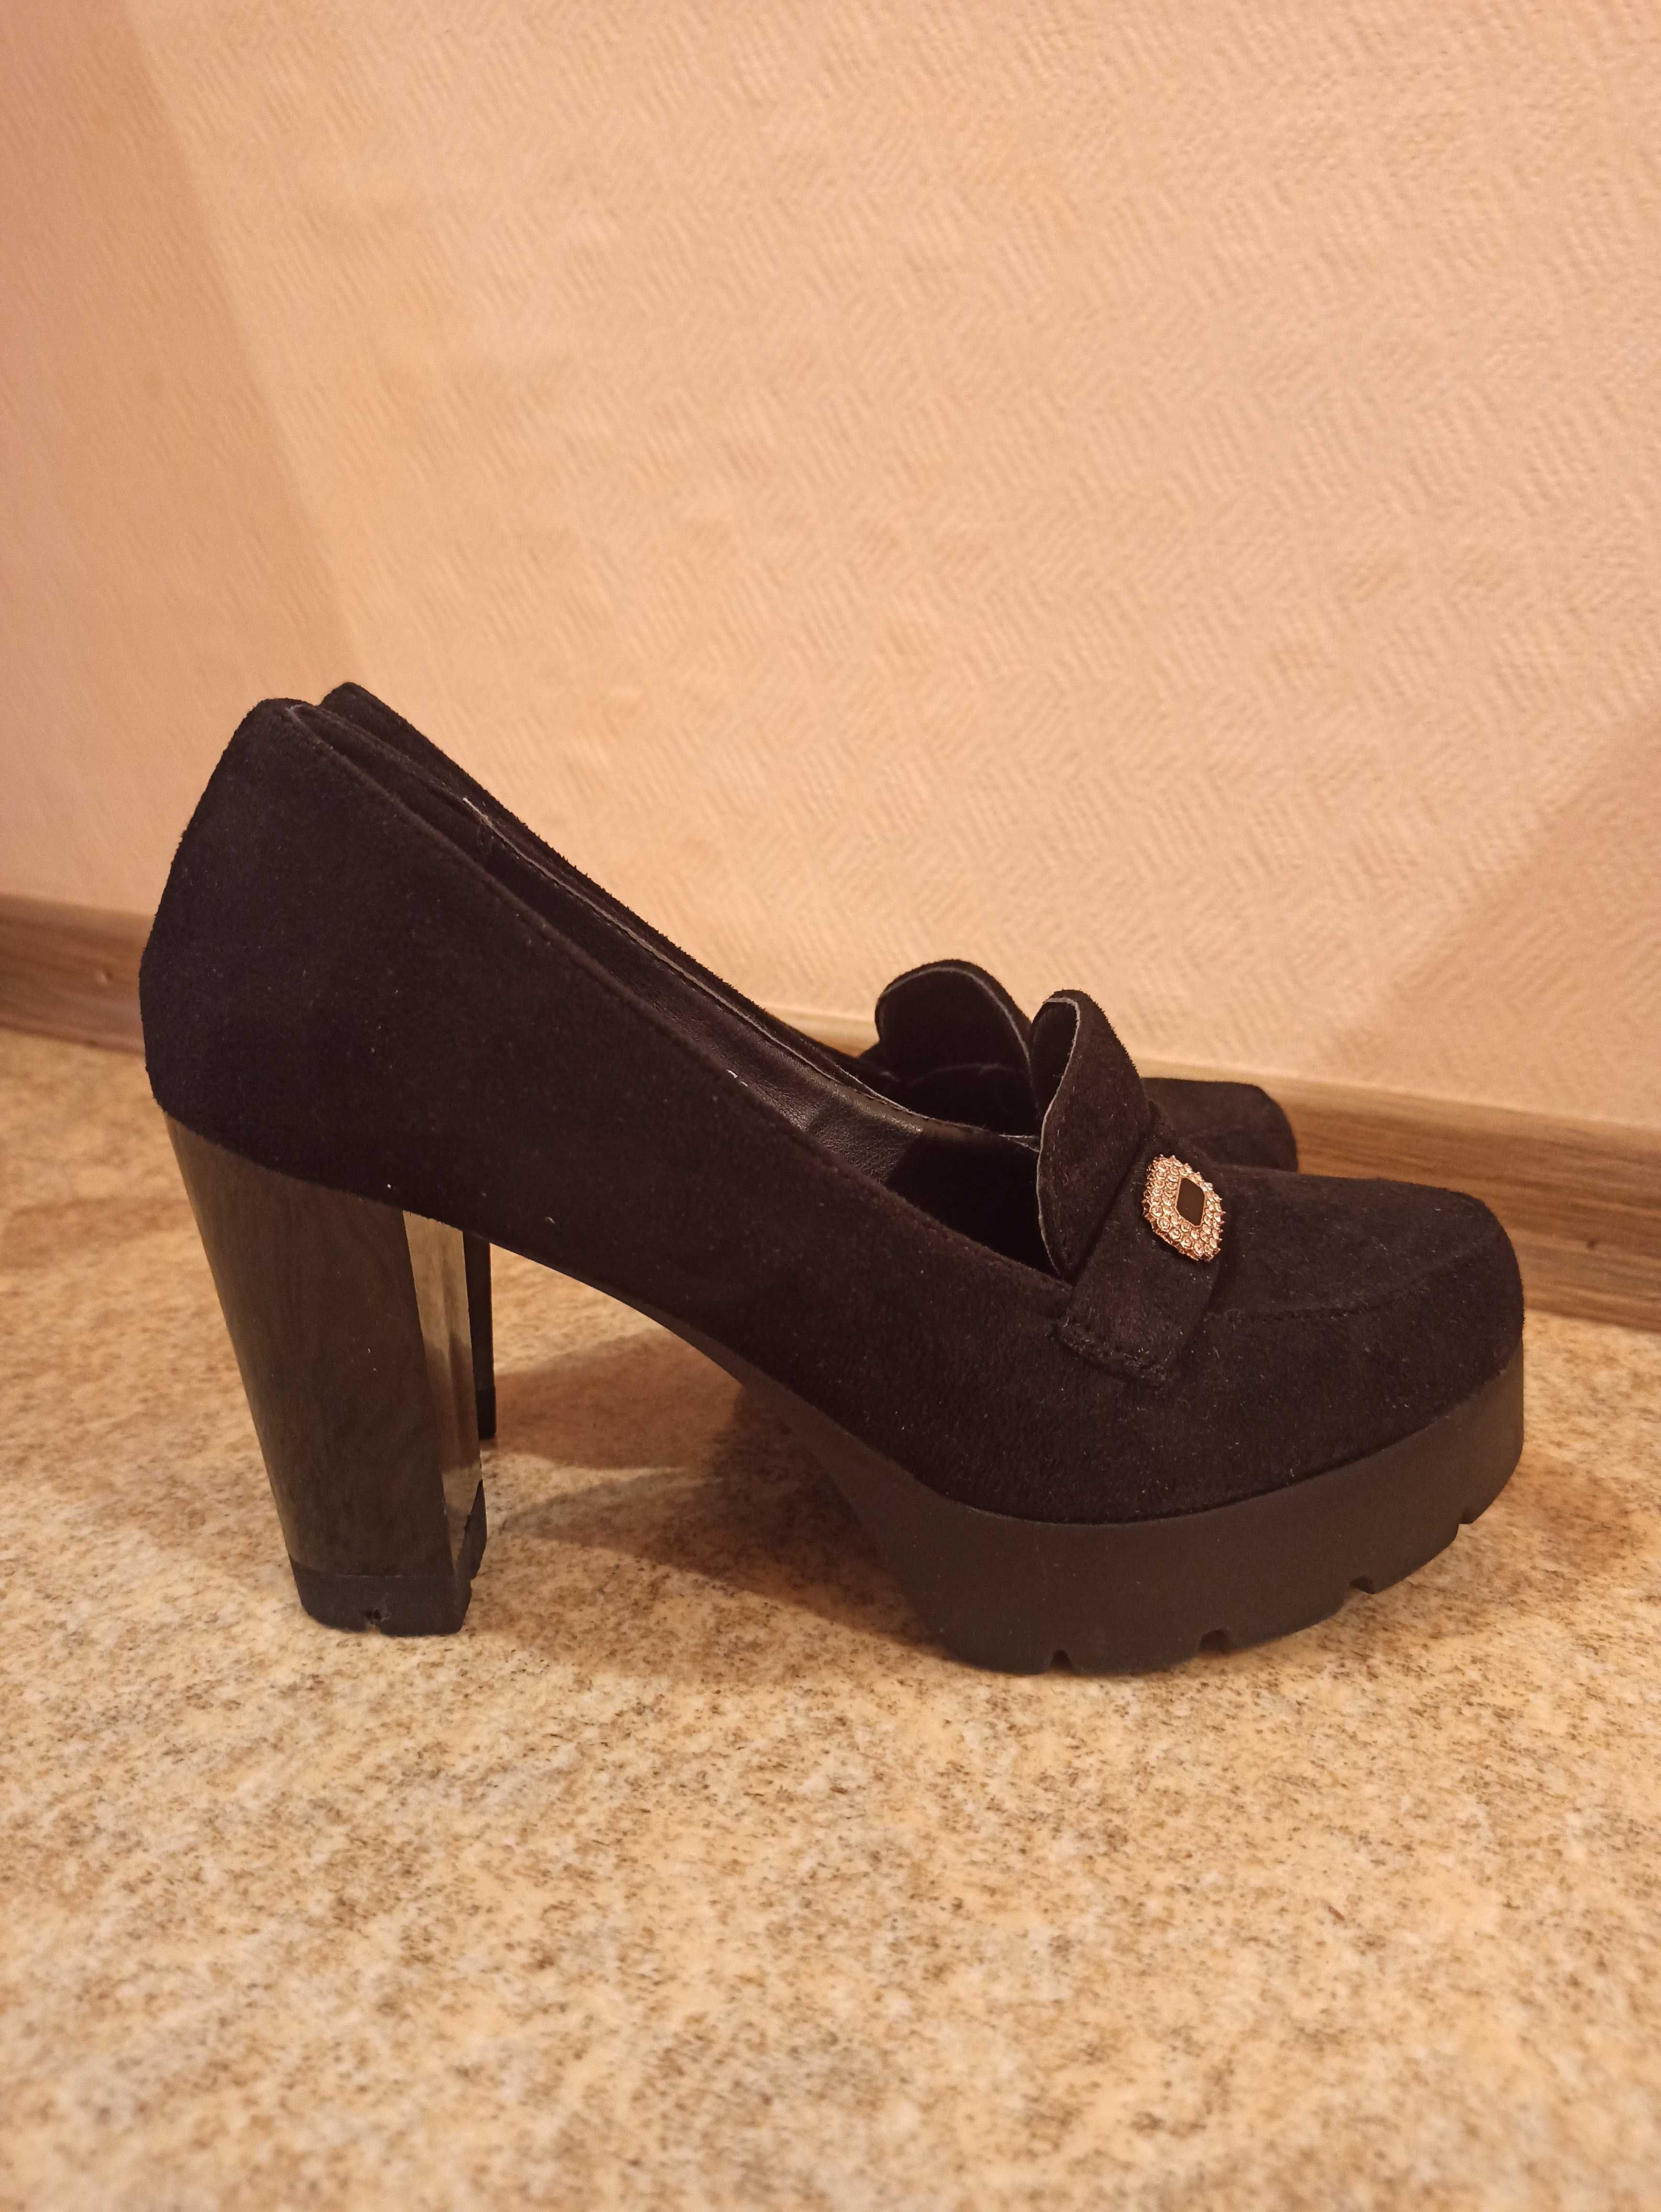 Продам женские туфли черные (нубук).